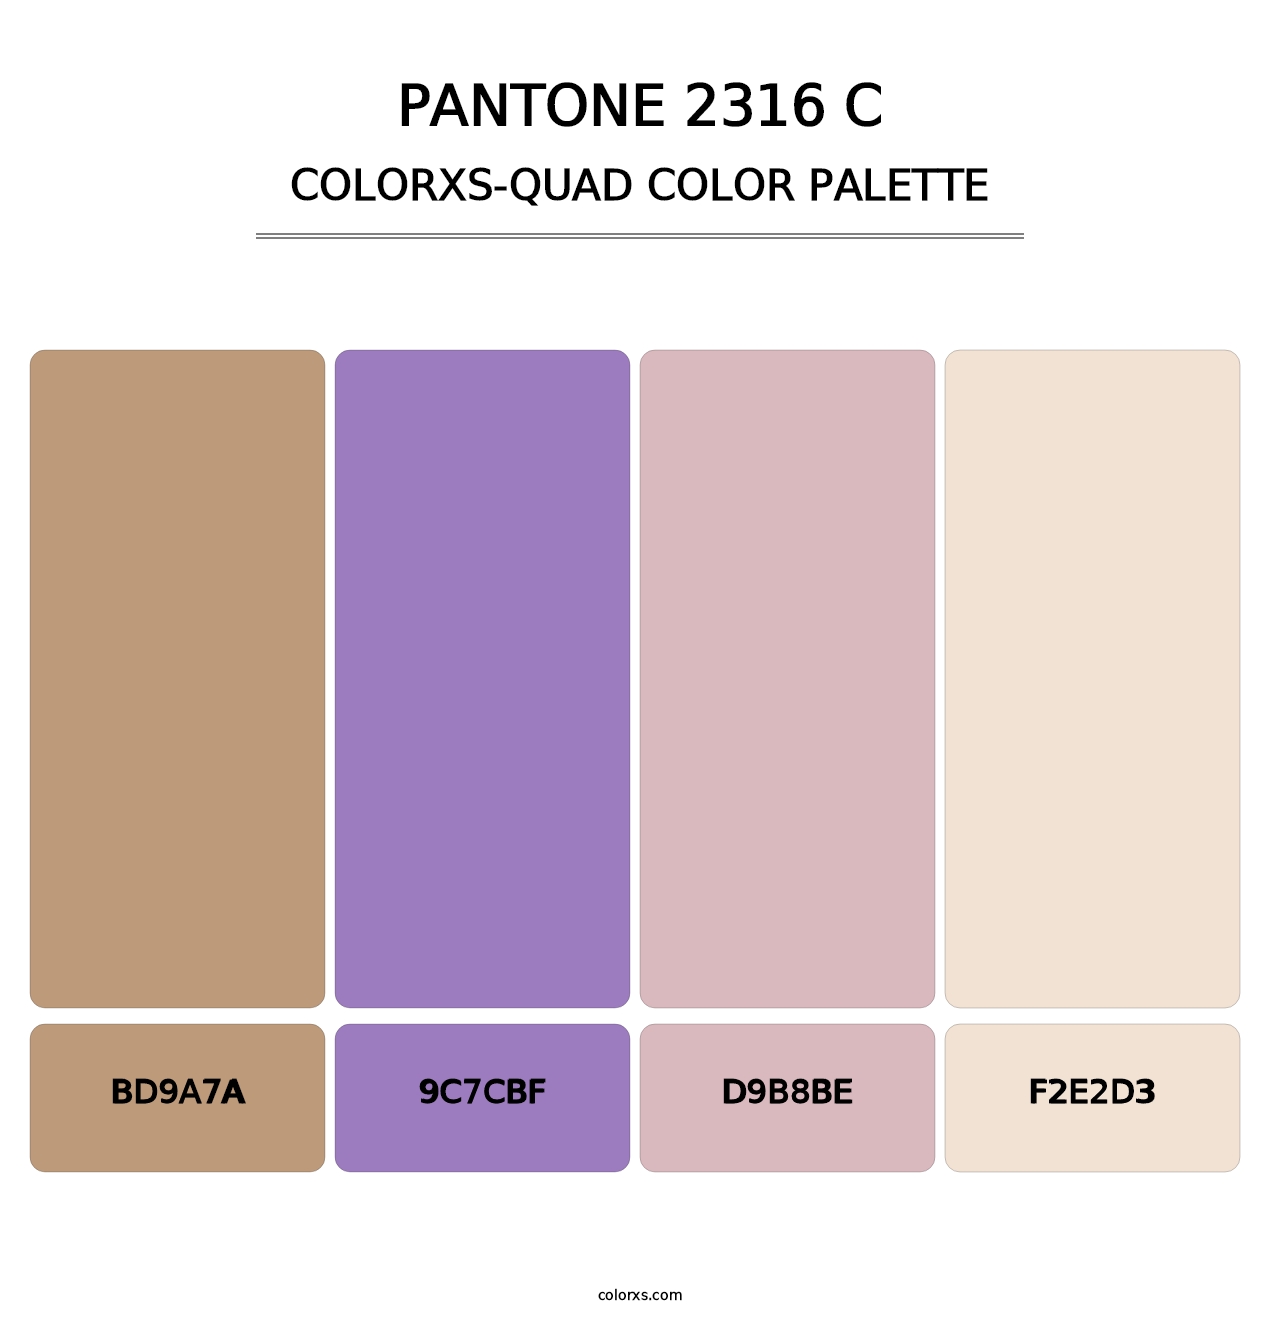 PANTONE 2316 C - Colorxs Quad Palette